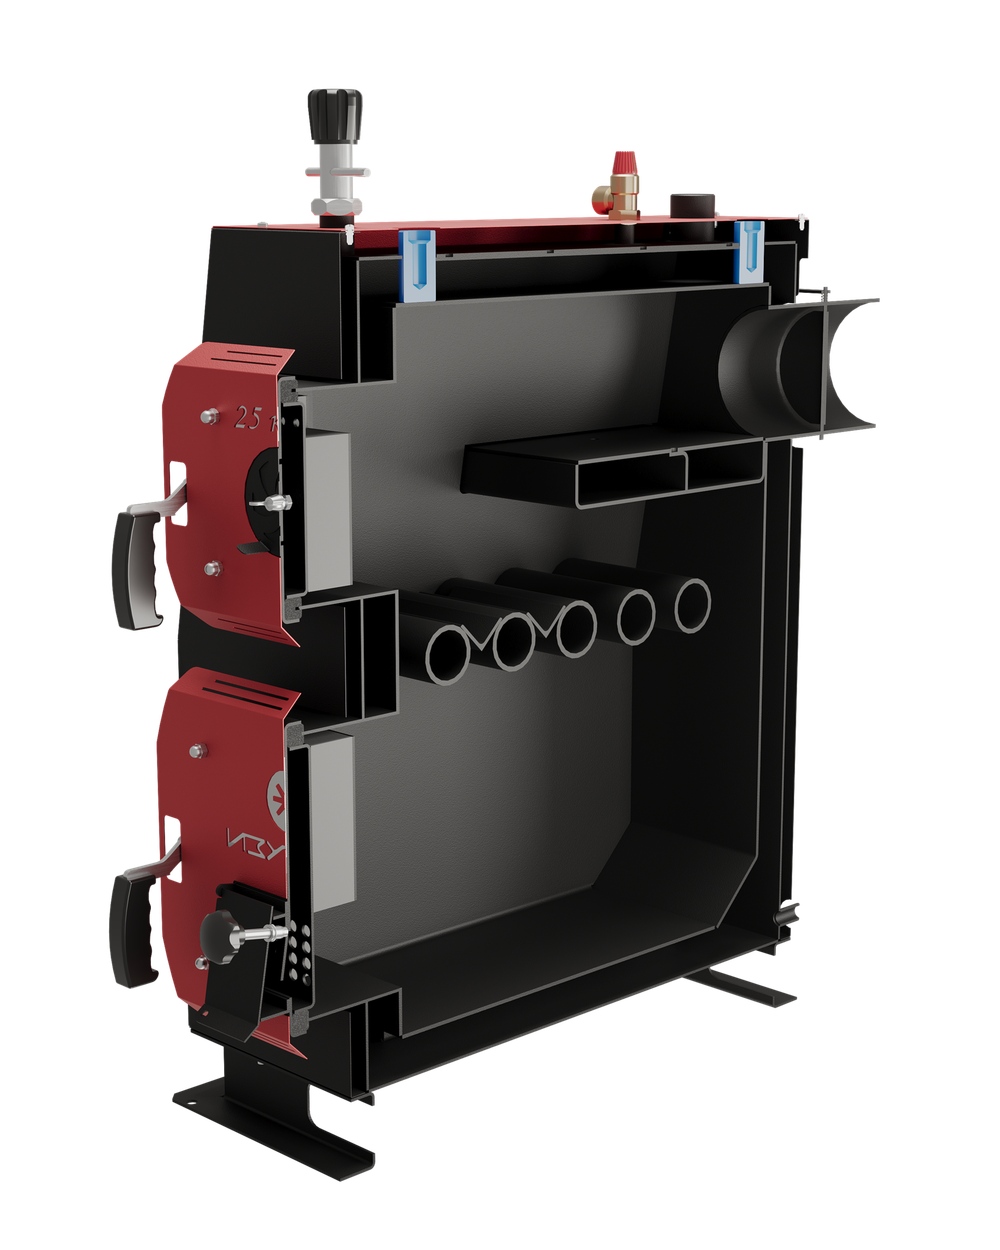 Твердотопливный котел длительного горения Изуран-65 в кожухе на 65 кВт. Отапливаемое помещение до 1755 куб.м. В разрезе. Производитель - Изуран